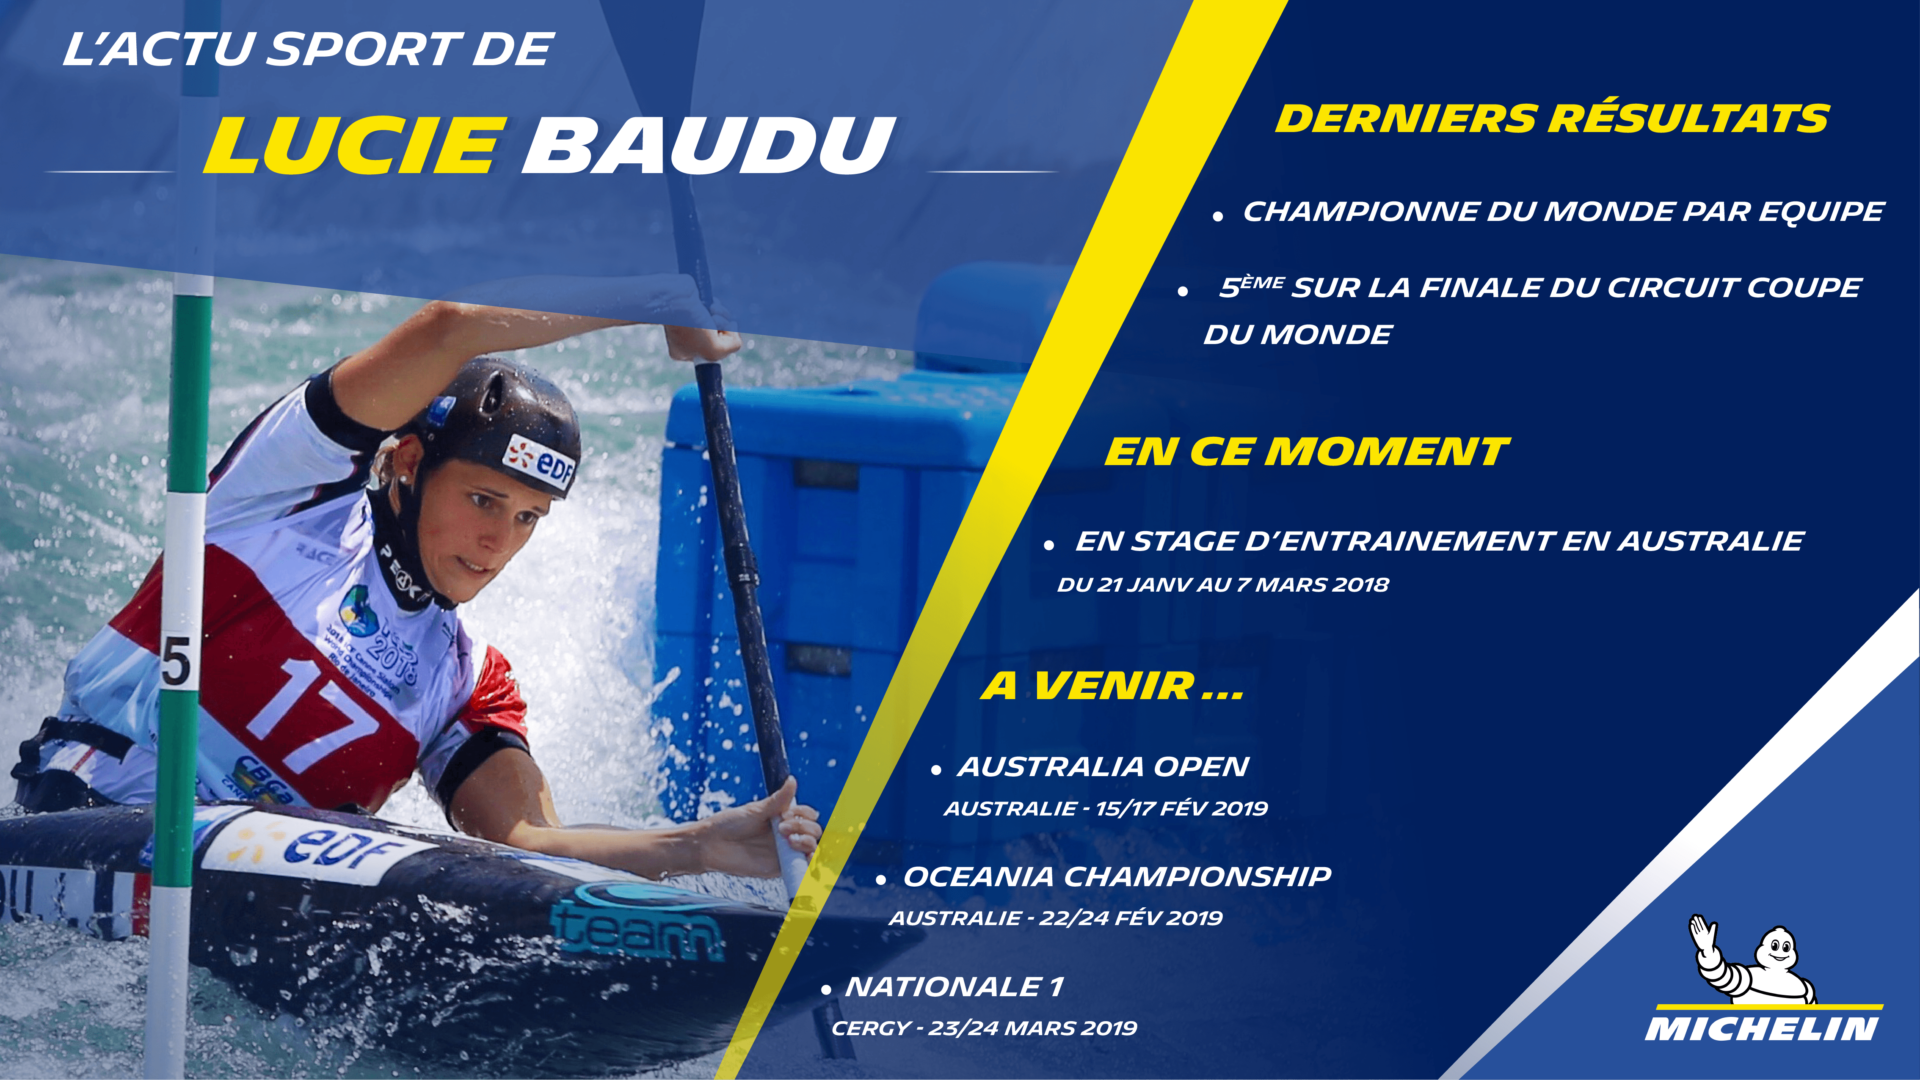 L'actu sport de Lucie BAUDU pour Michelin